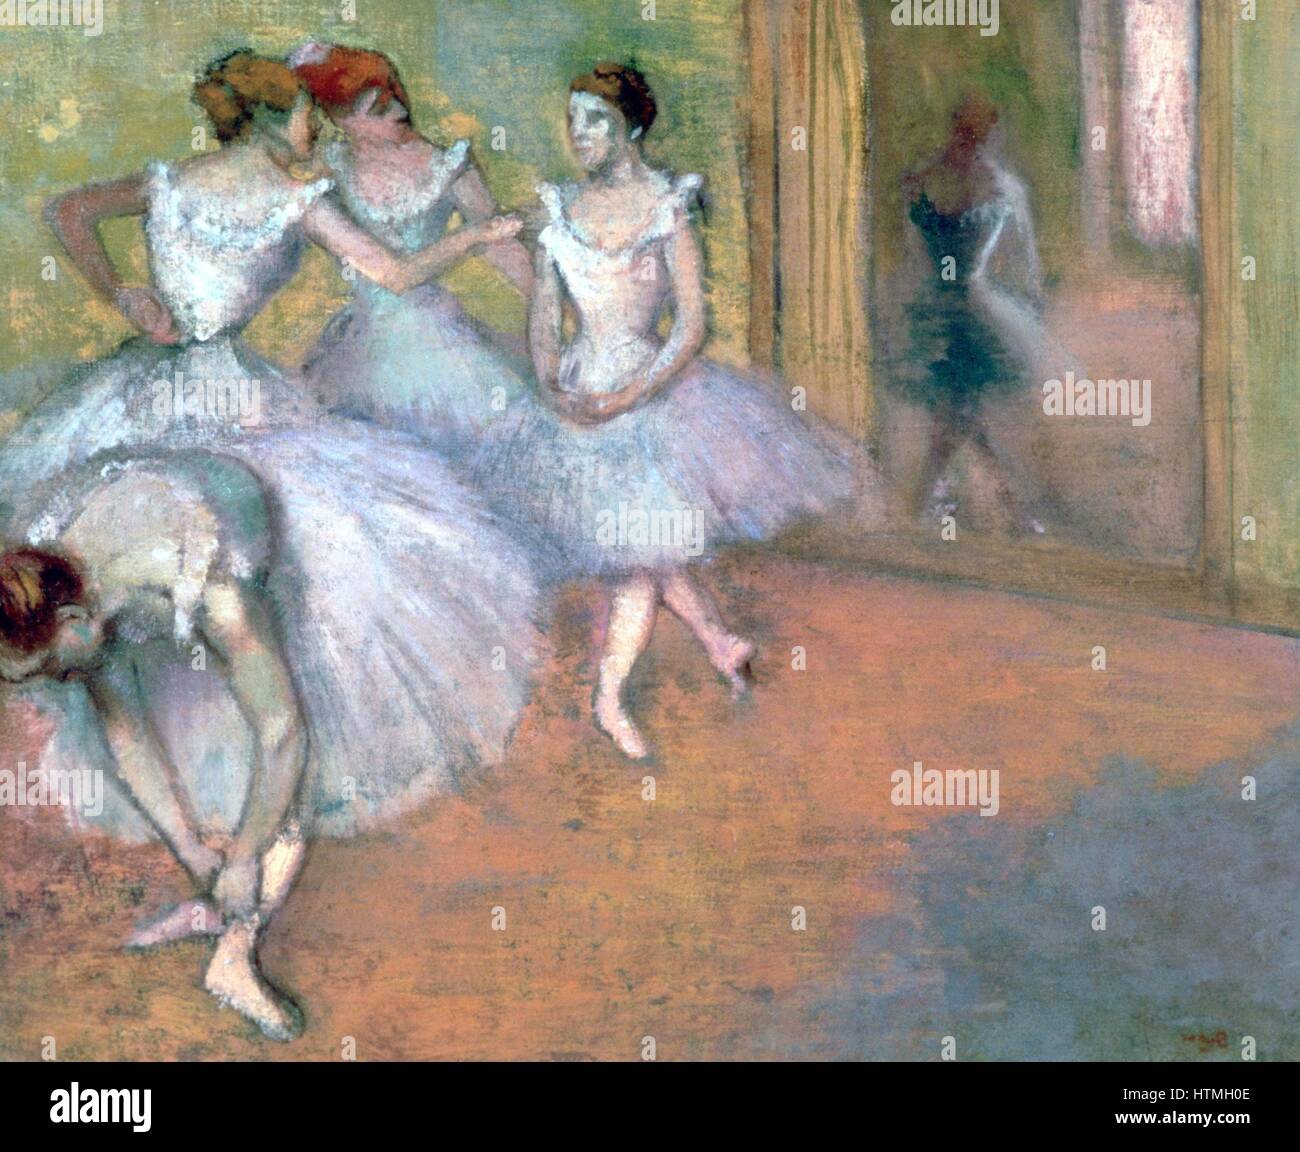 Quatre danseurs dans le foyer" : les membres du corps de ballet en tutus chatting. Edgar Degas (1834-1917). Peintre impressionniste français. Banque D'Images